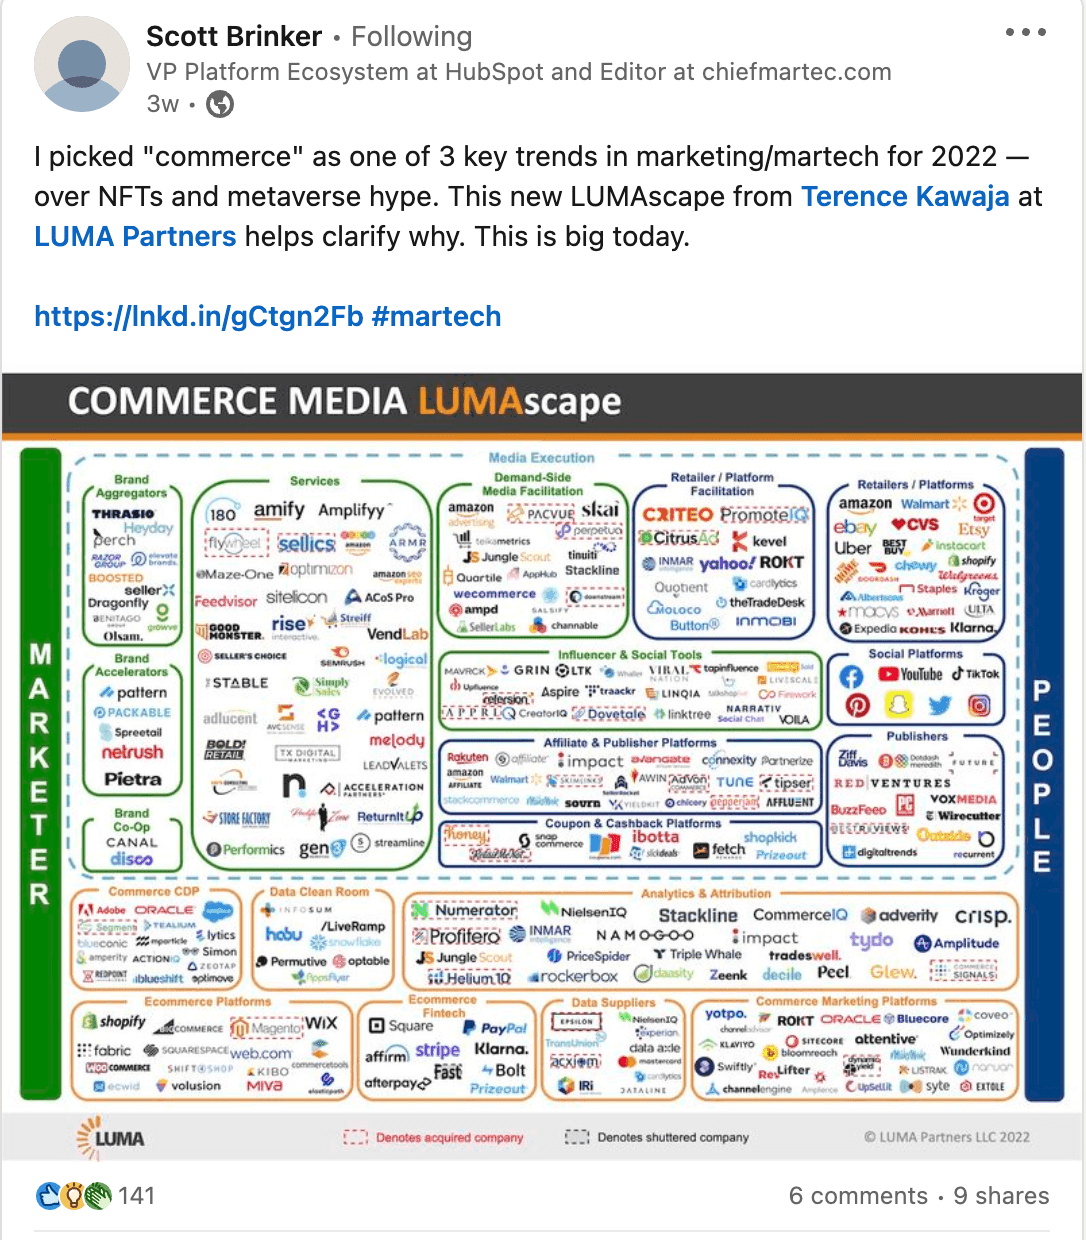 LinkedIn post sharing a LUMAscape of commerce media